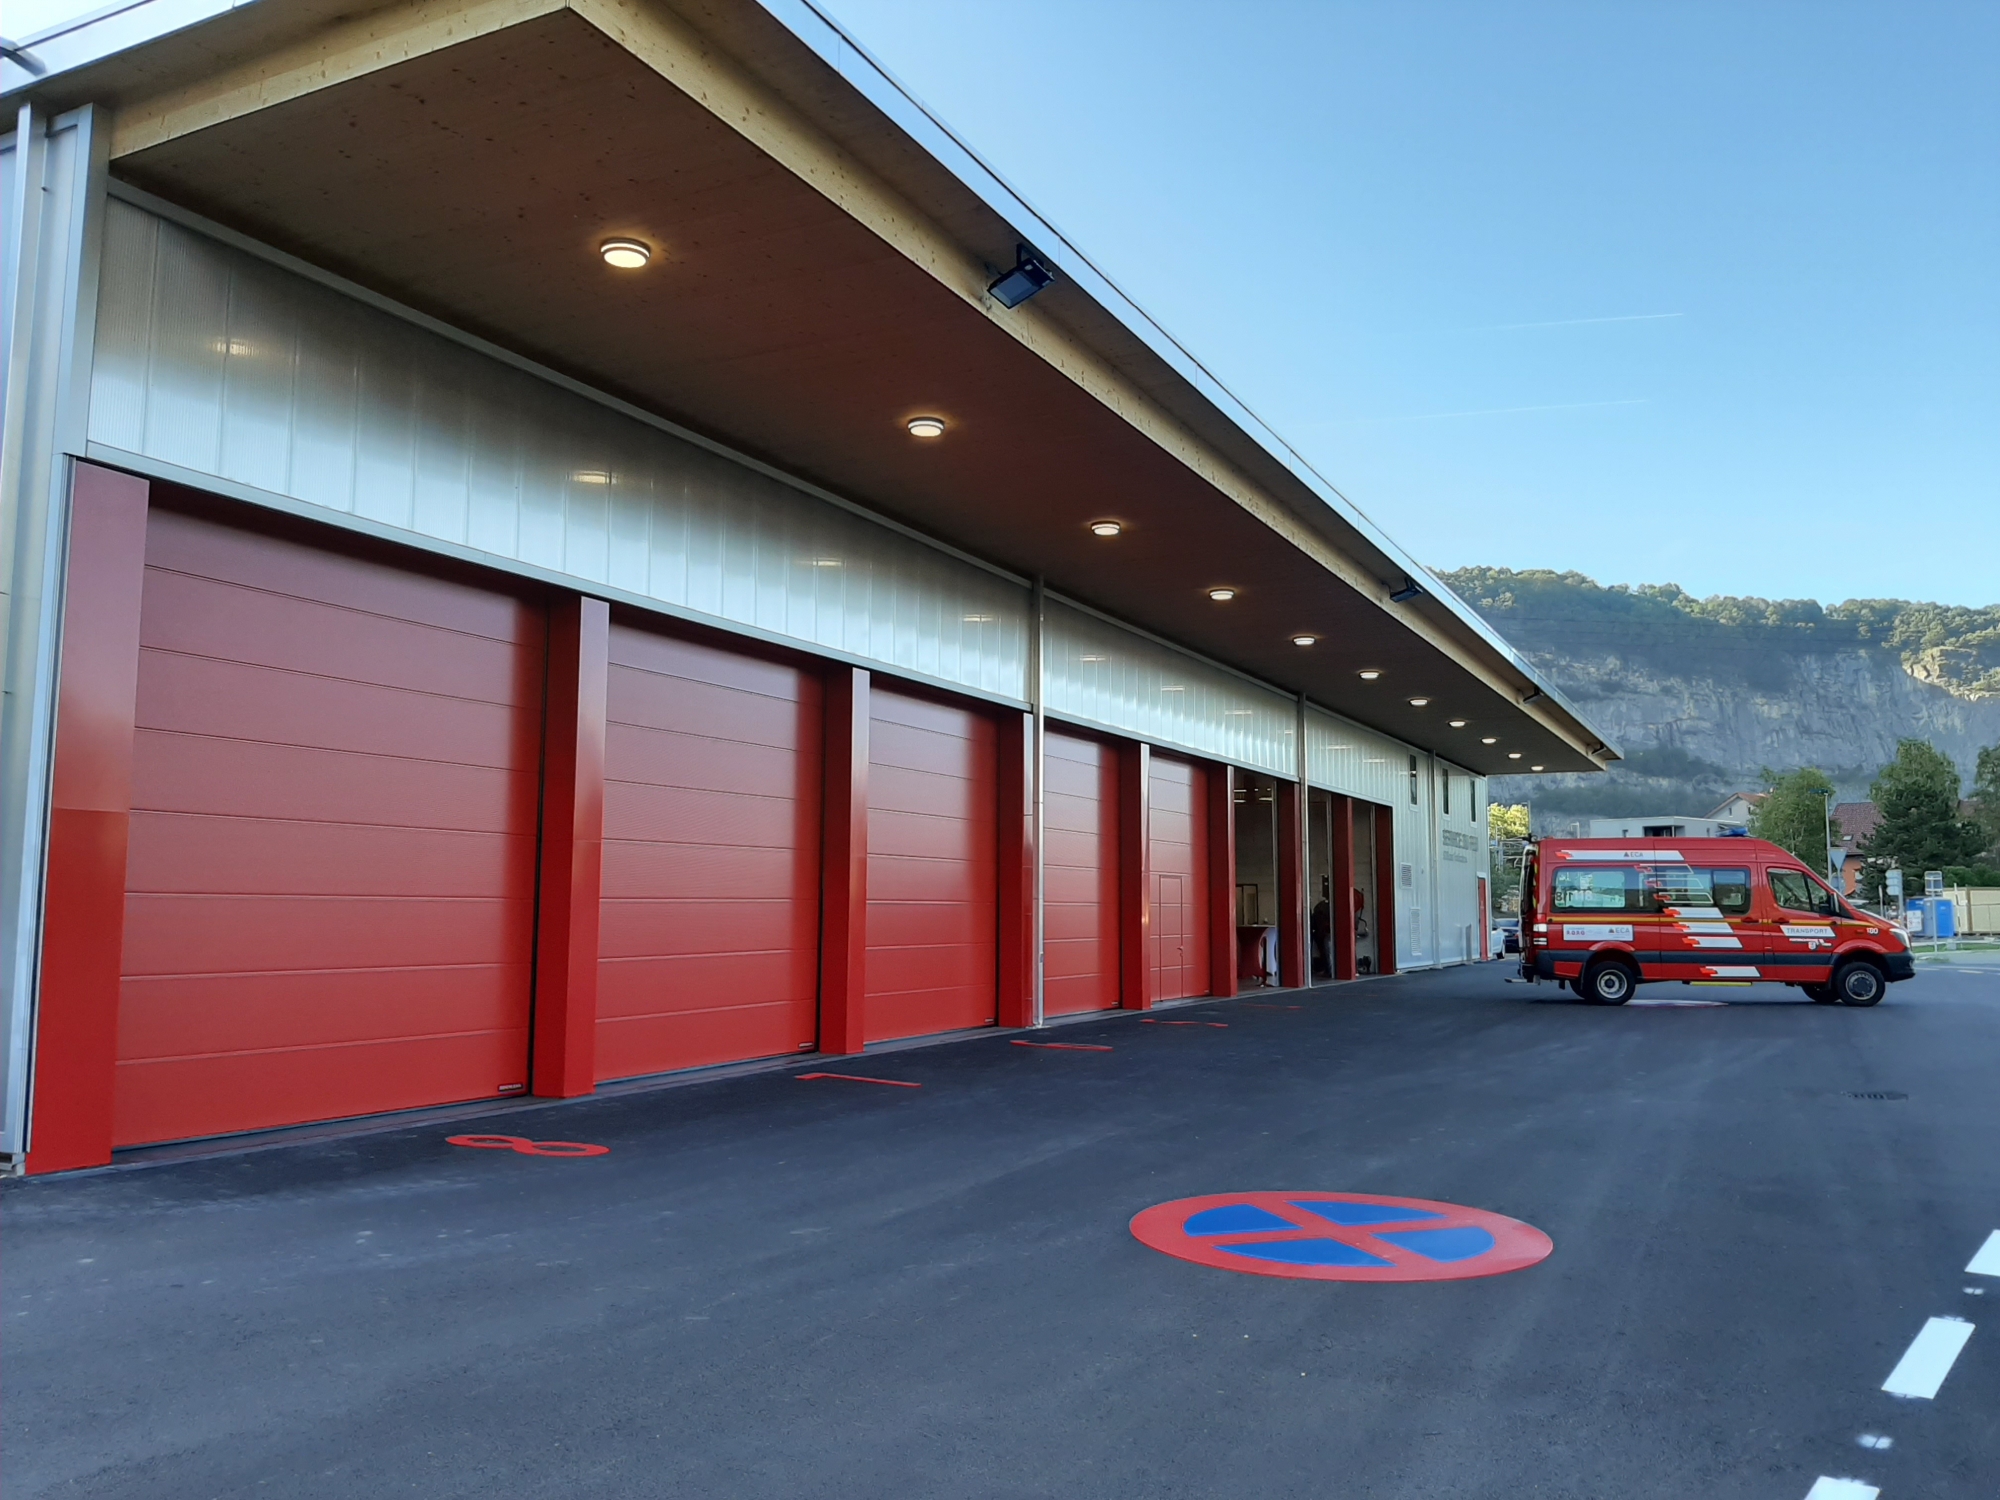 La nouvelle caserne permettra d'accueillir jusqu'à 50 pompiers.